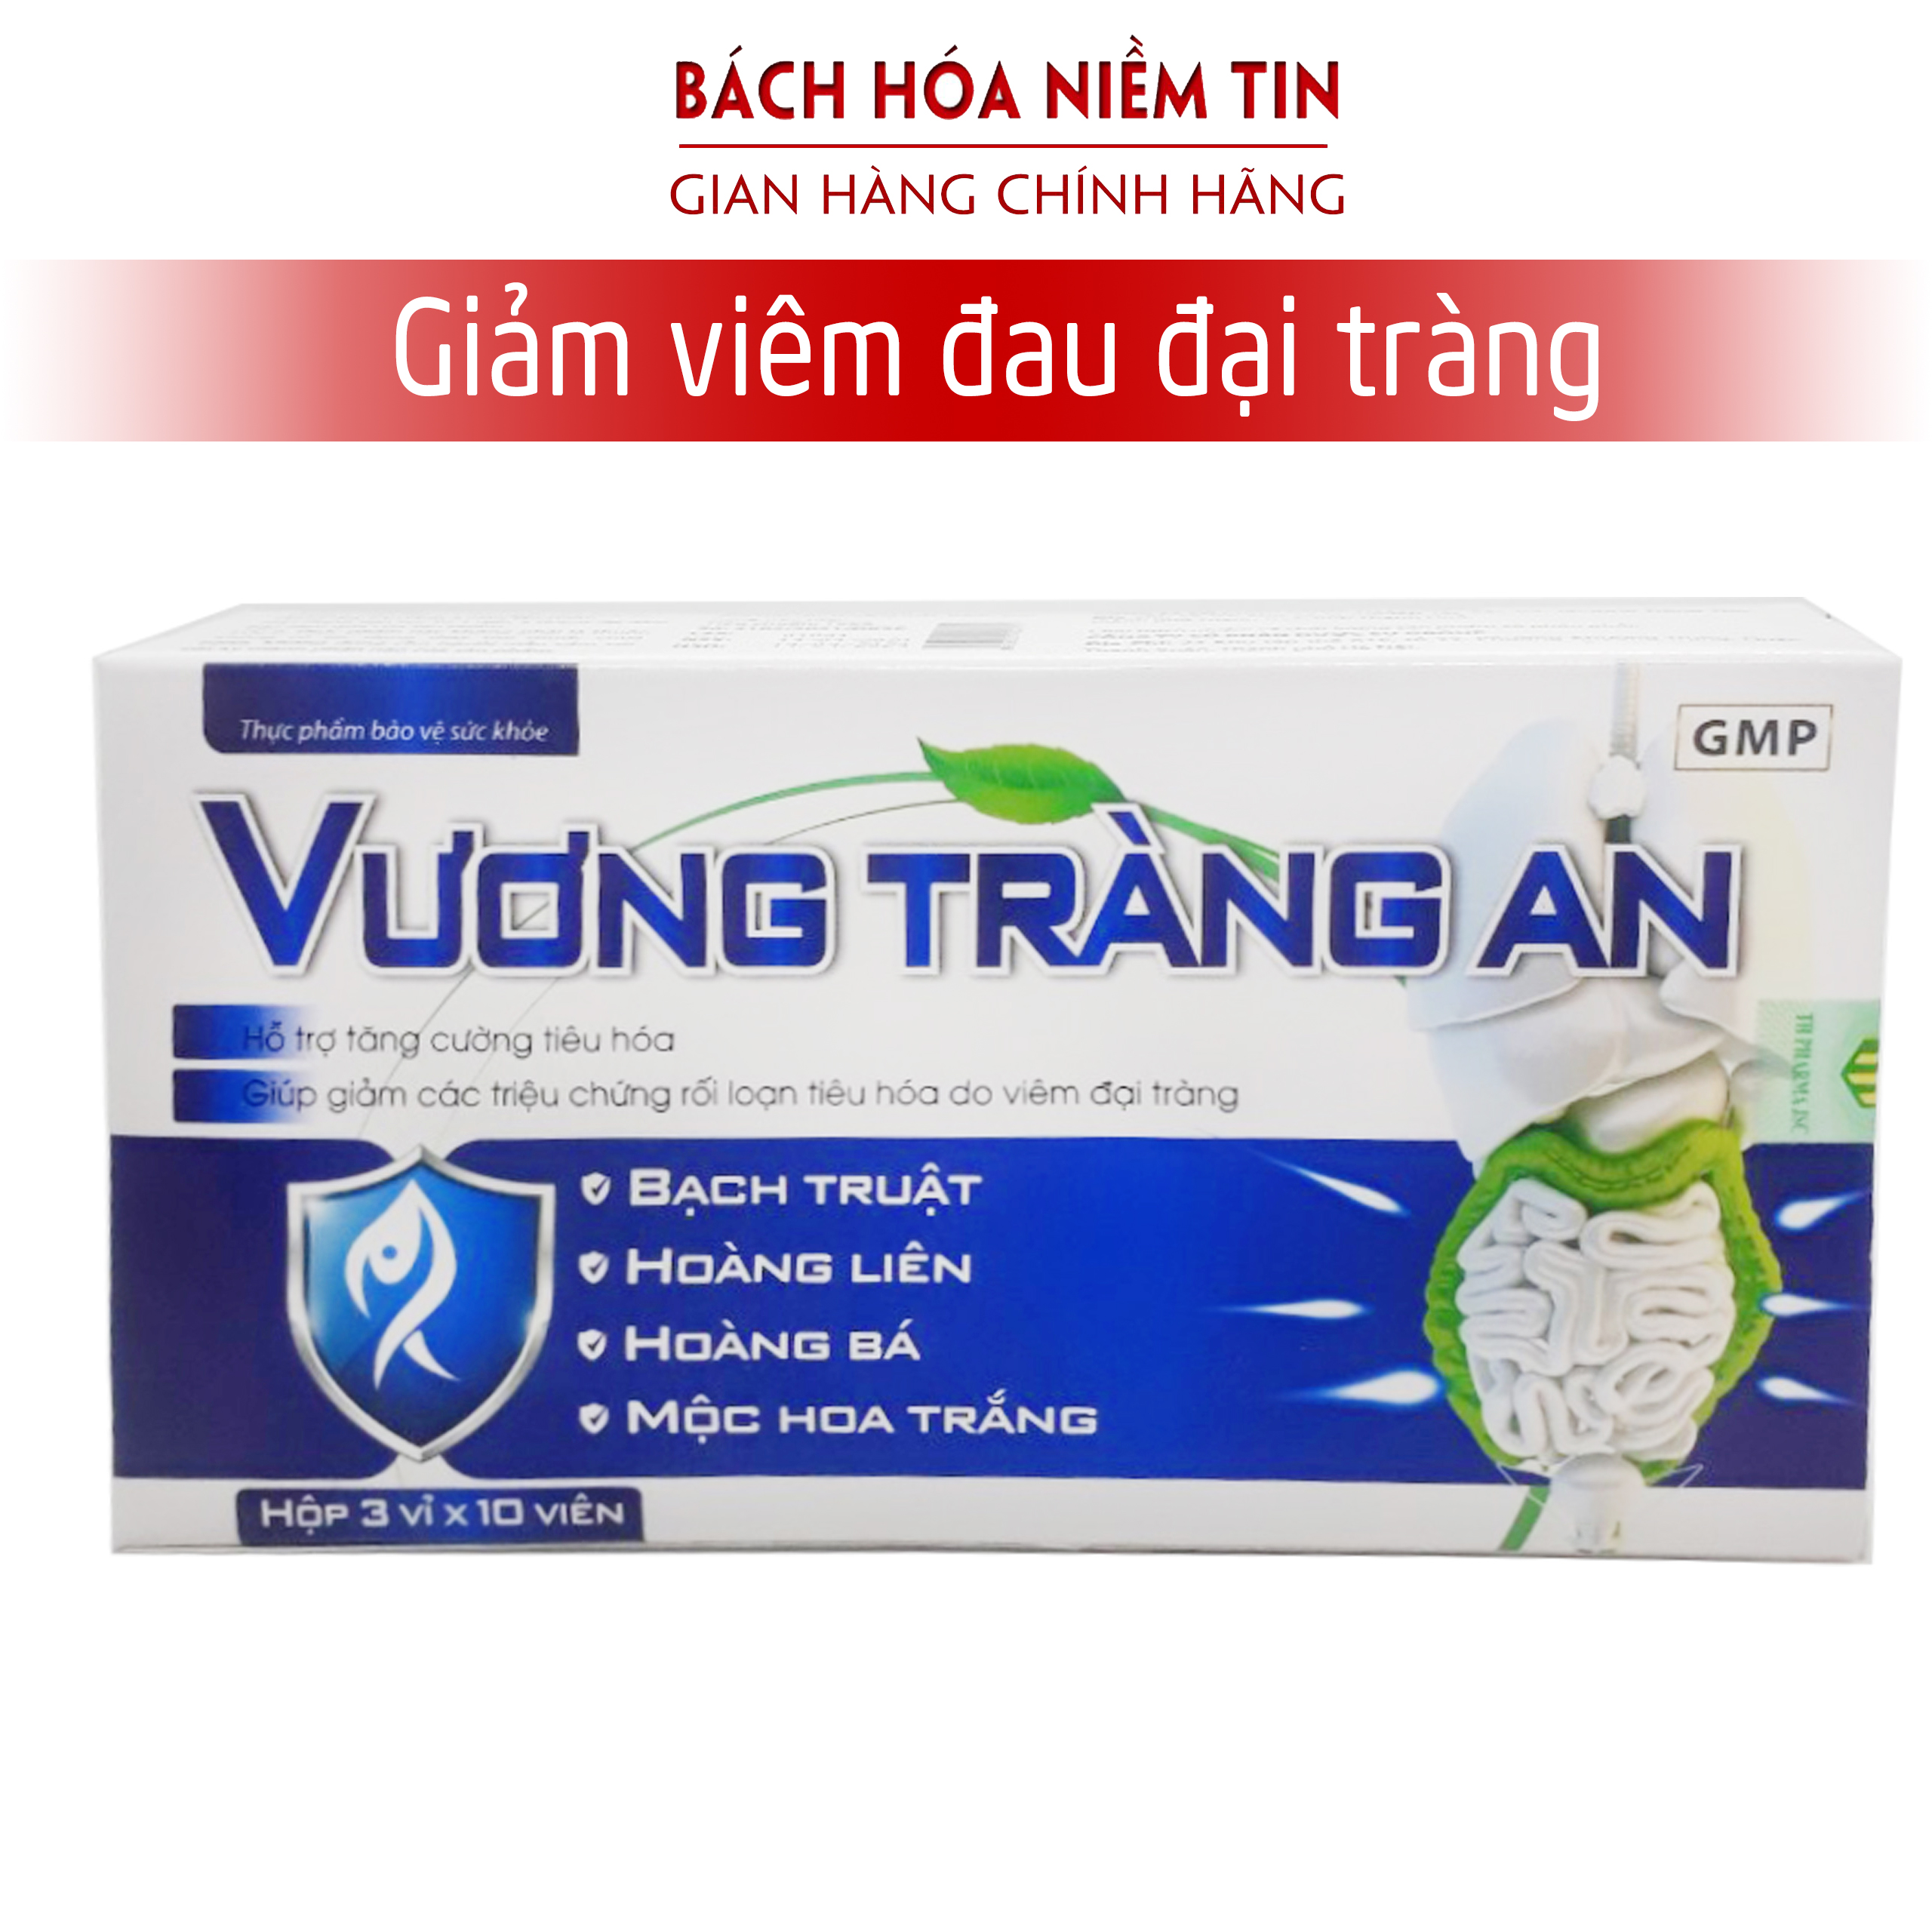 Viên uống Vương Tràng An - giúp tăng cường hệ tiêu hóa, giảm viêm